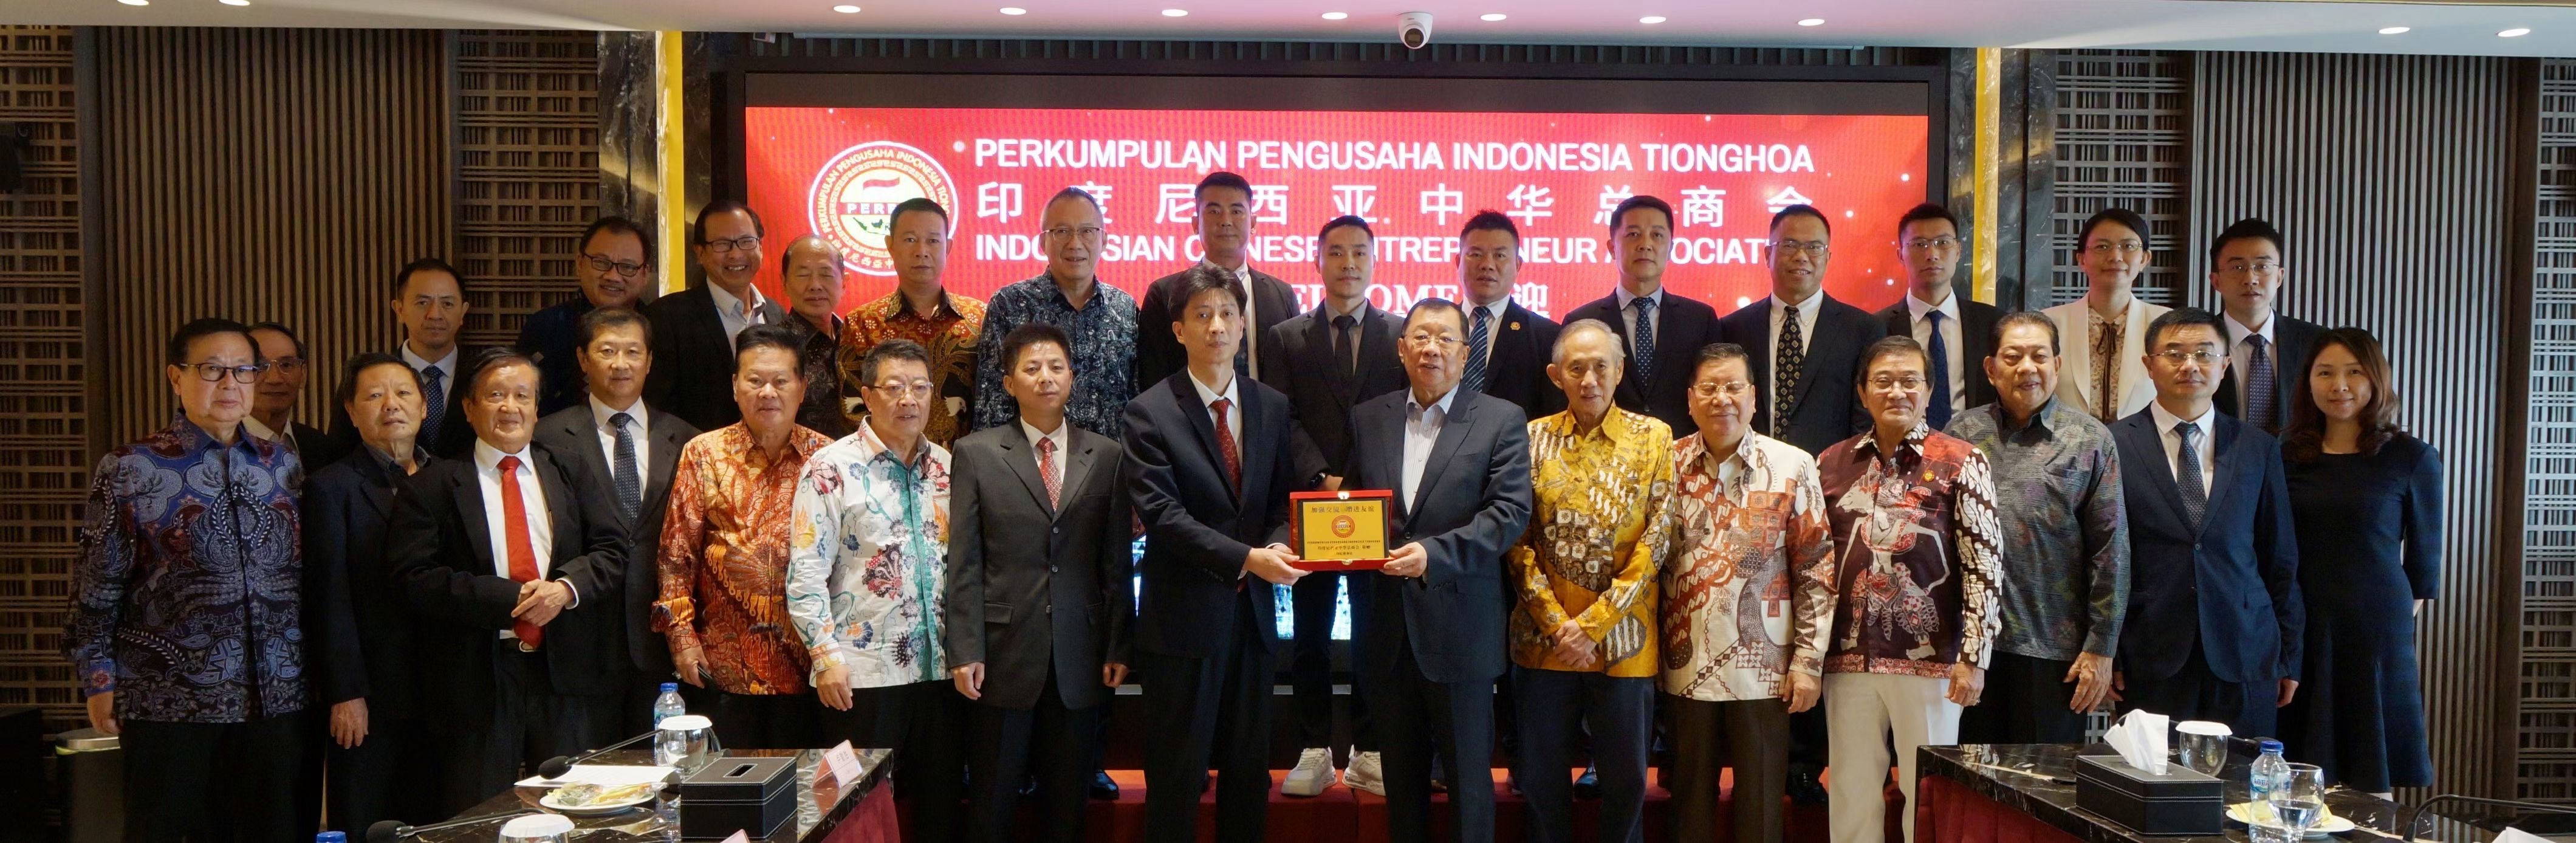 Shantou Delegation Led by Secretary of Shantou Municipal Committee in Jakarta Baby World Toys